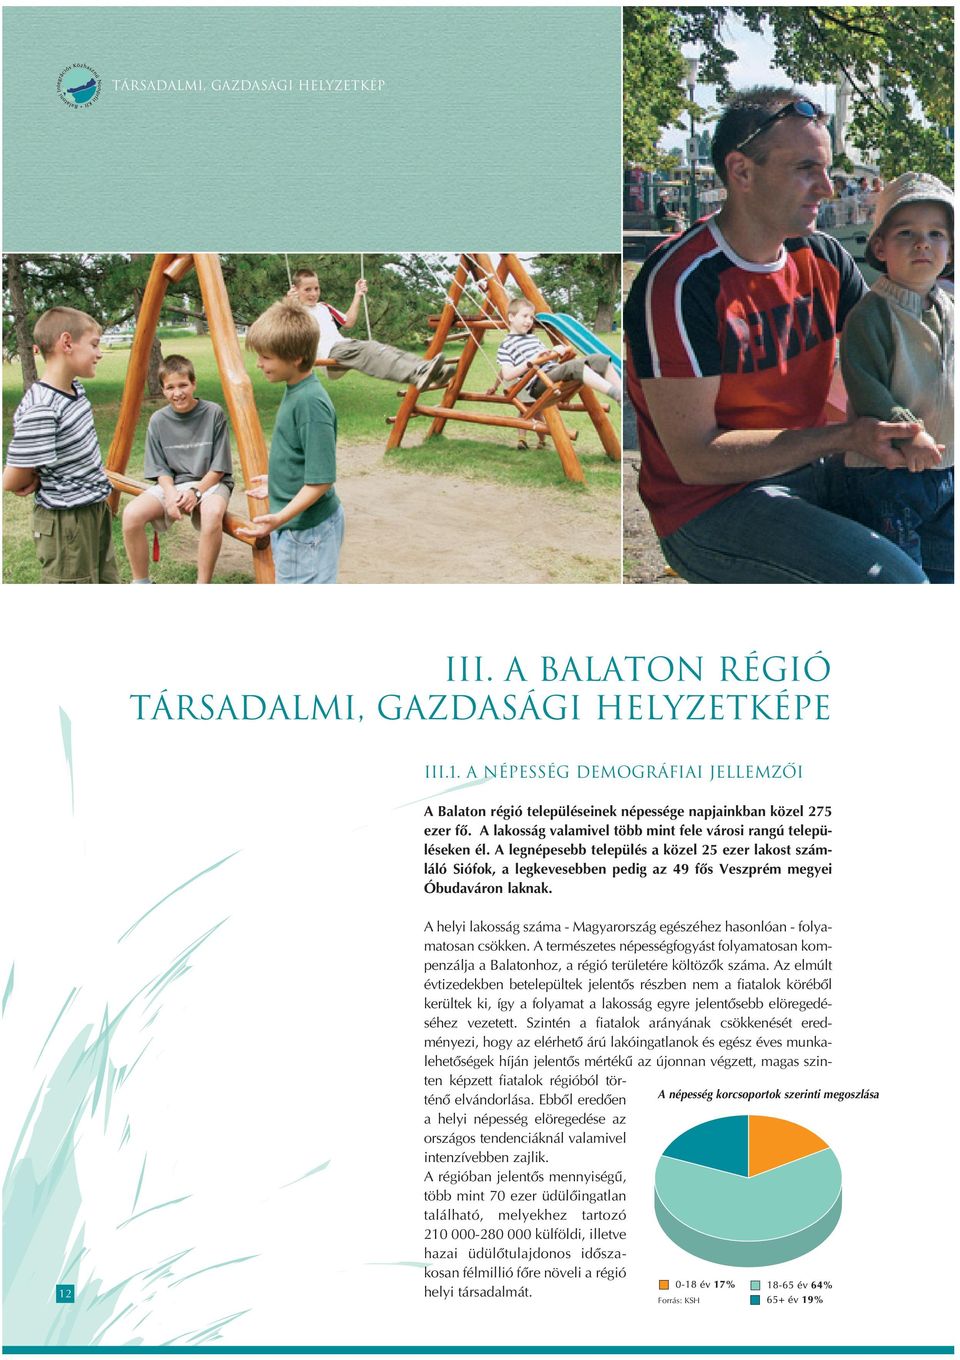 12 A helyi lakosság száma - Magyarország egészéhez hasonlóan - folyamatosan csökken. A természetes népességfogyást folyamatosan kompenzálja a Balatonhoz, a régió területére költözôk száma.